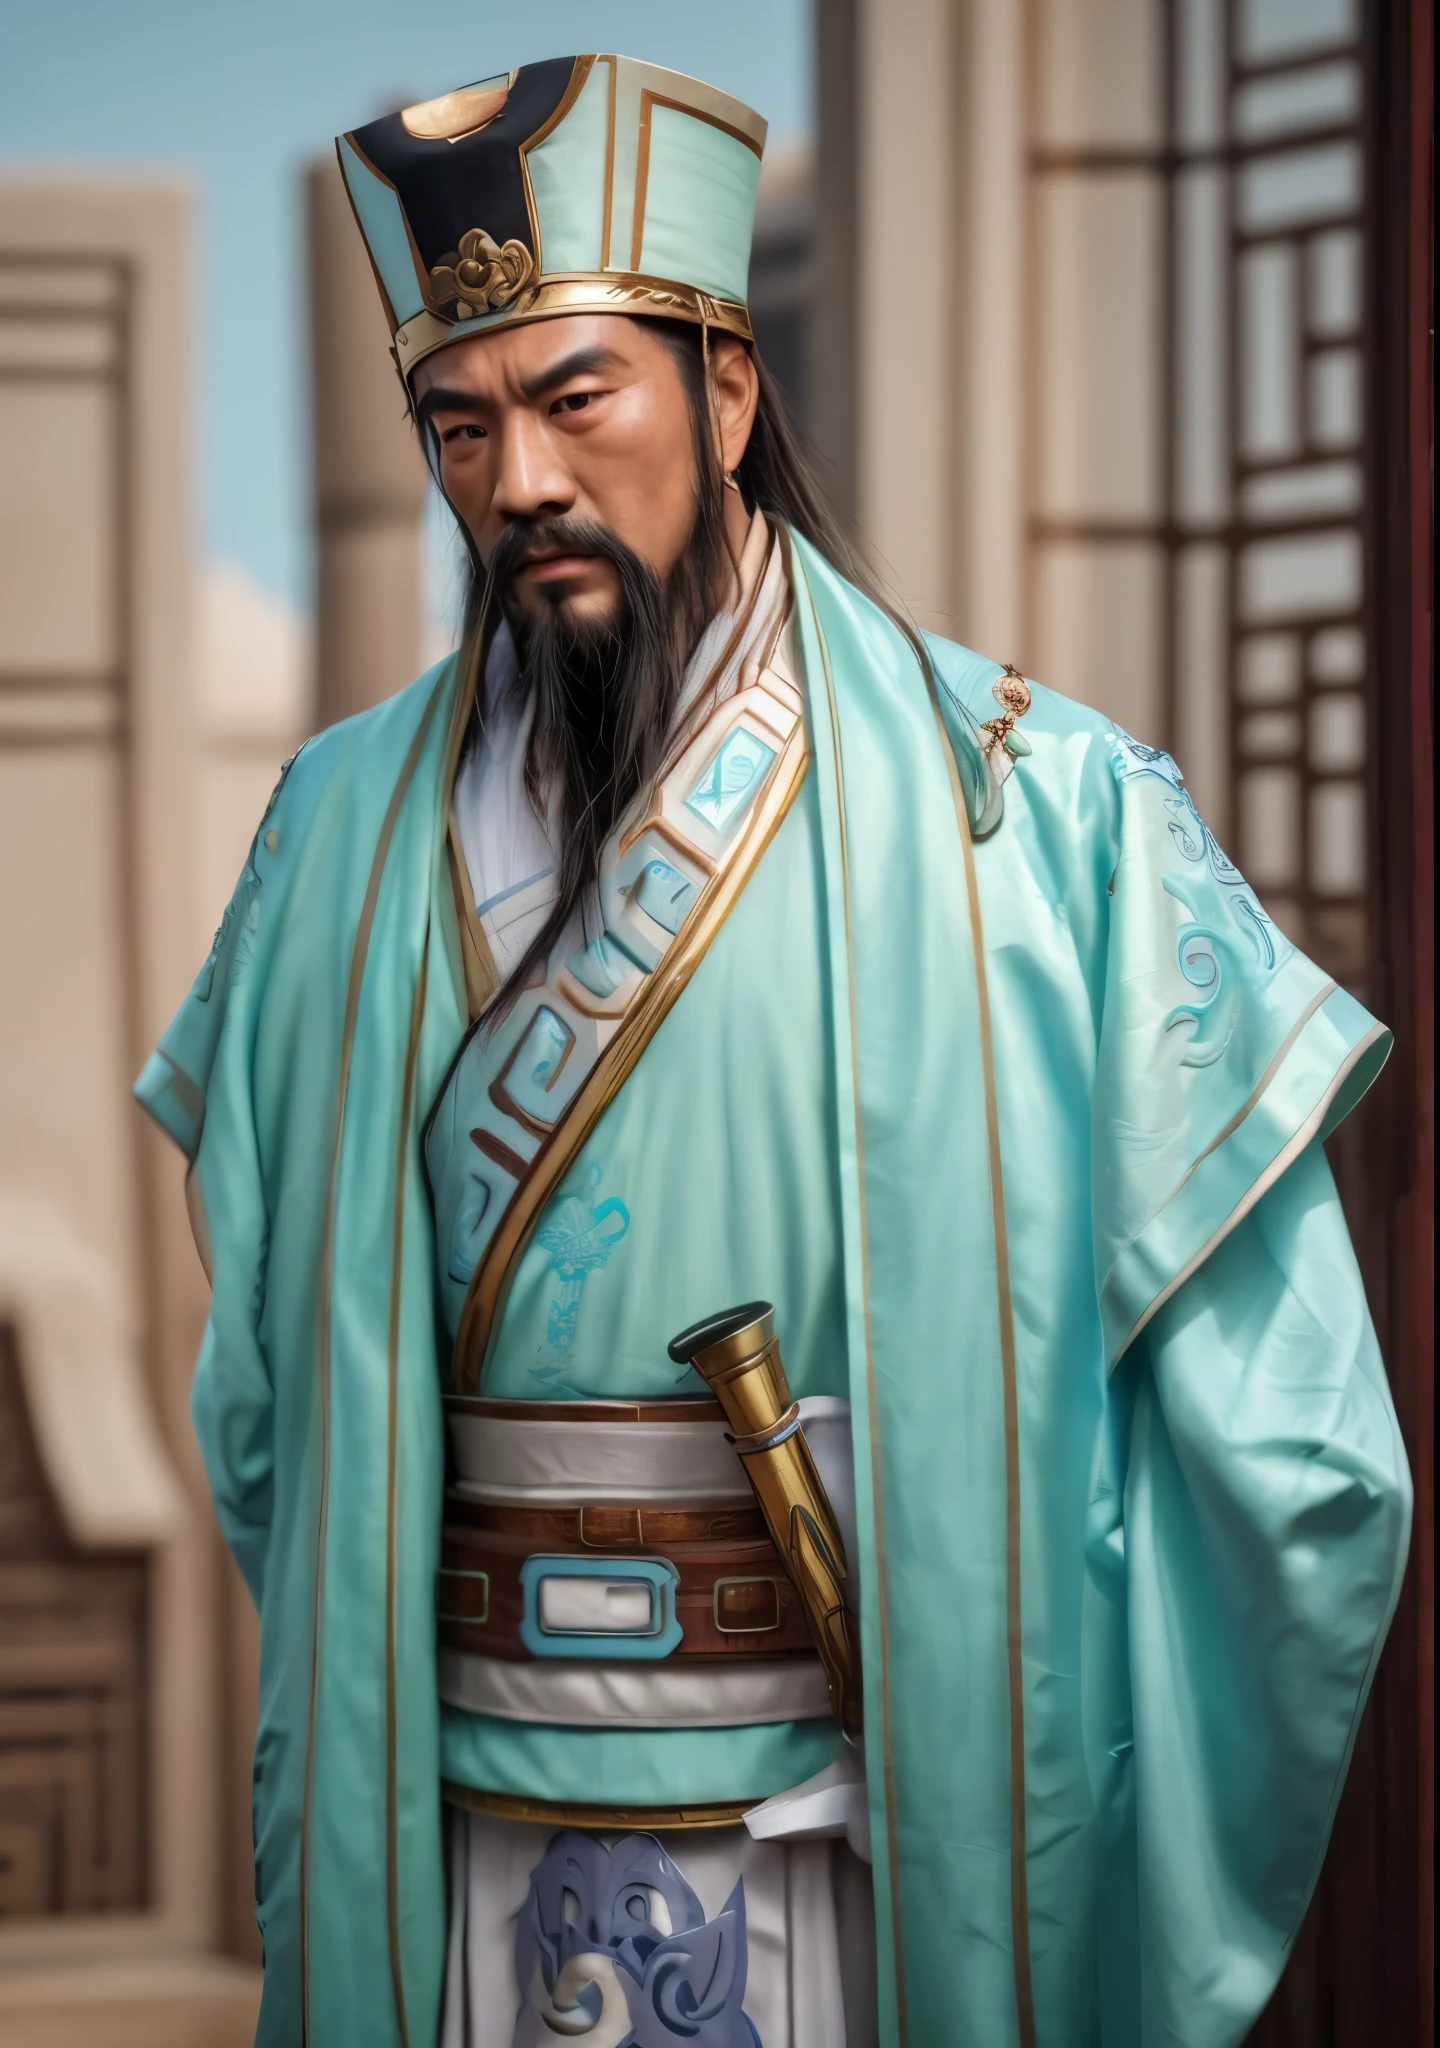 ภาพระยะใกล้ของชายสวมเสื้อผ้าสีฟ้าครามและสีขาว, แรงบันดาลใจจากดงหยวน, แรงบันดาลใจจาก Cao Zhibai, แรงบันดาลใจจากวูบิน, แรงบันดาลใจจาก Hu Zaobin, แรงบันดาลใจจากจักรพรรดิ Xuande, แรงบันดาลใจจากหลี่คาน, แรงบันดาลใจจากหวงติง, แรงบันดาลใจจาก Wu Daozi, แรงบันดาลใจจากจางลู่, แรงบันดาลใจจากจาง เซิงเหยา